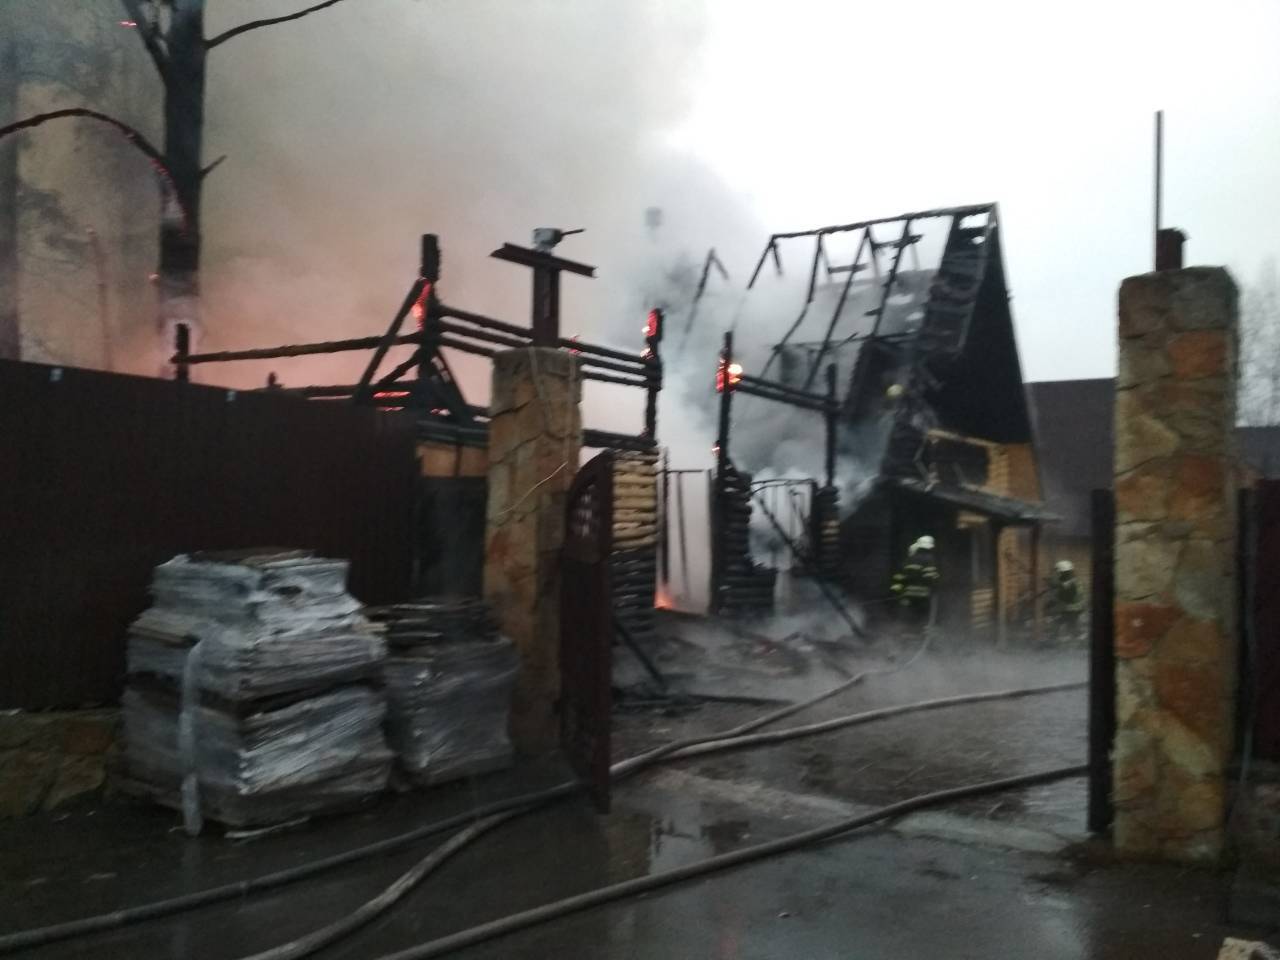 Під Києвом загорівся відомий ресторан: у мережу потрапило відео